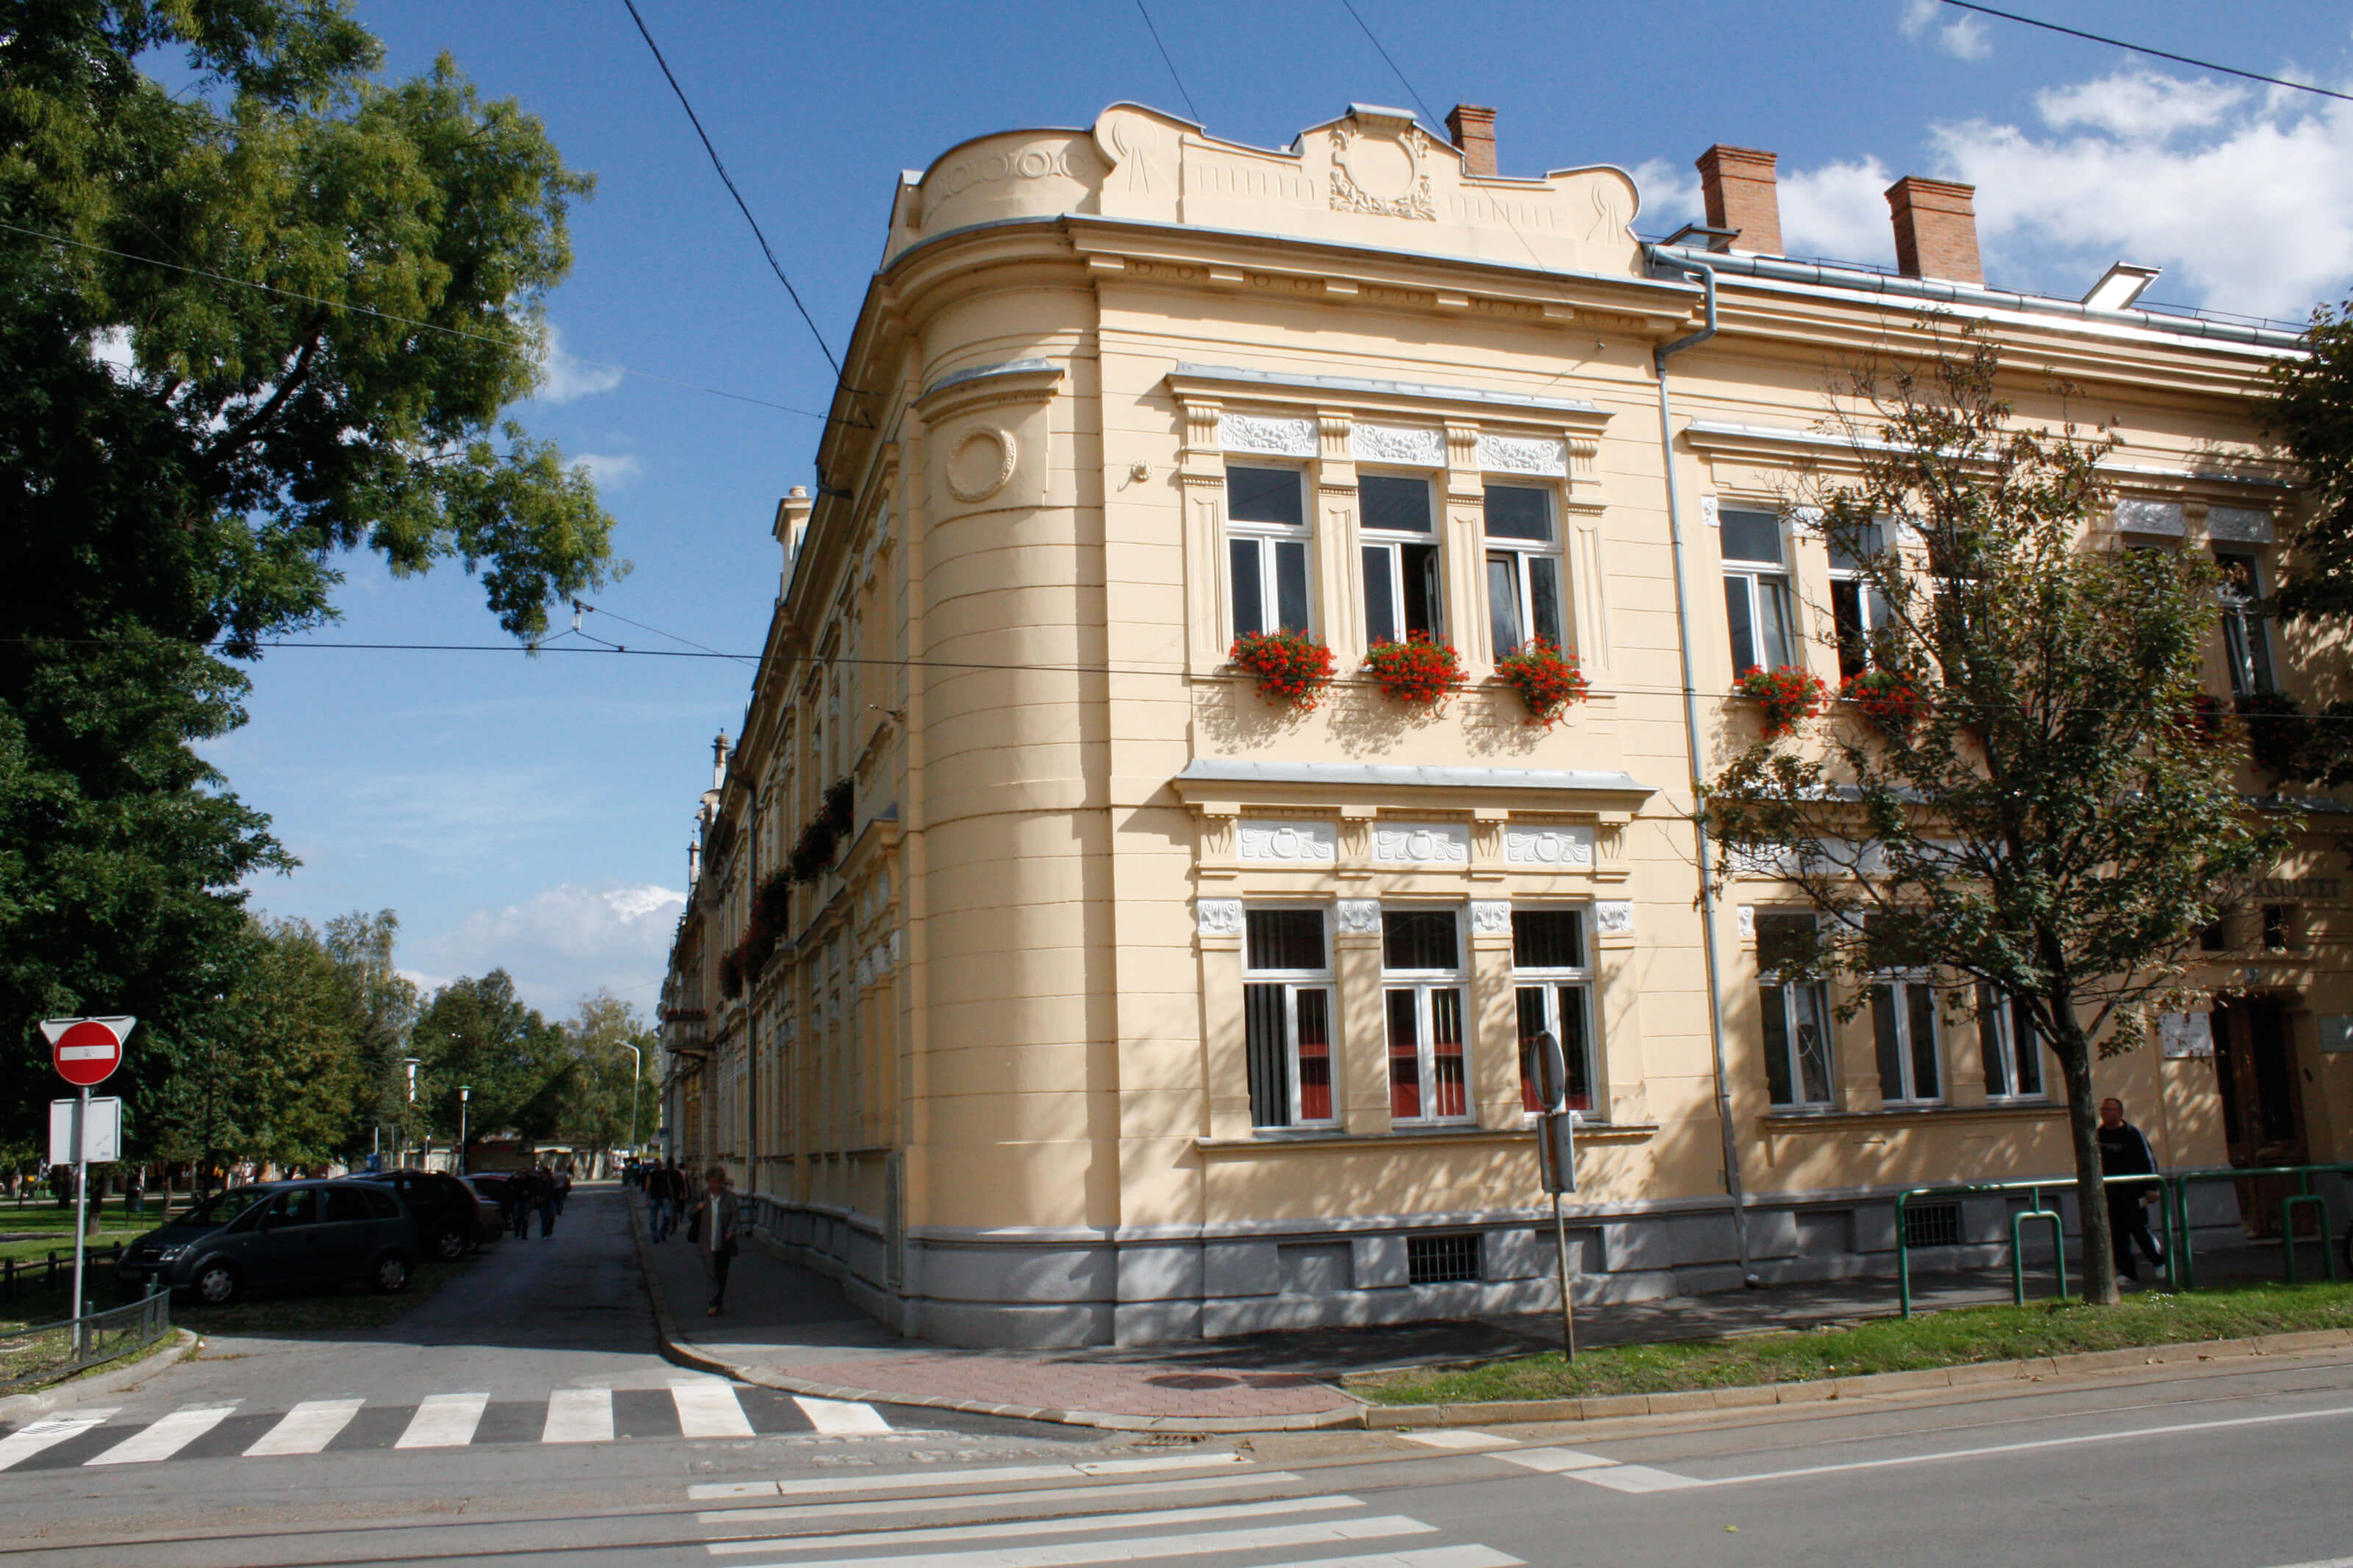 Pravni fakultet u Osijeku